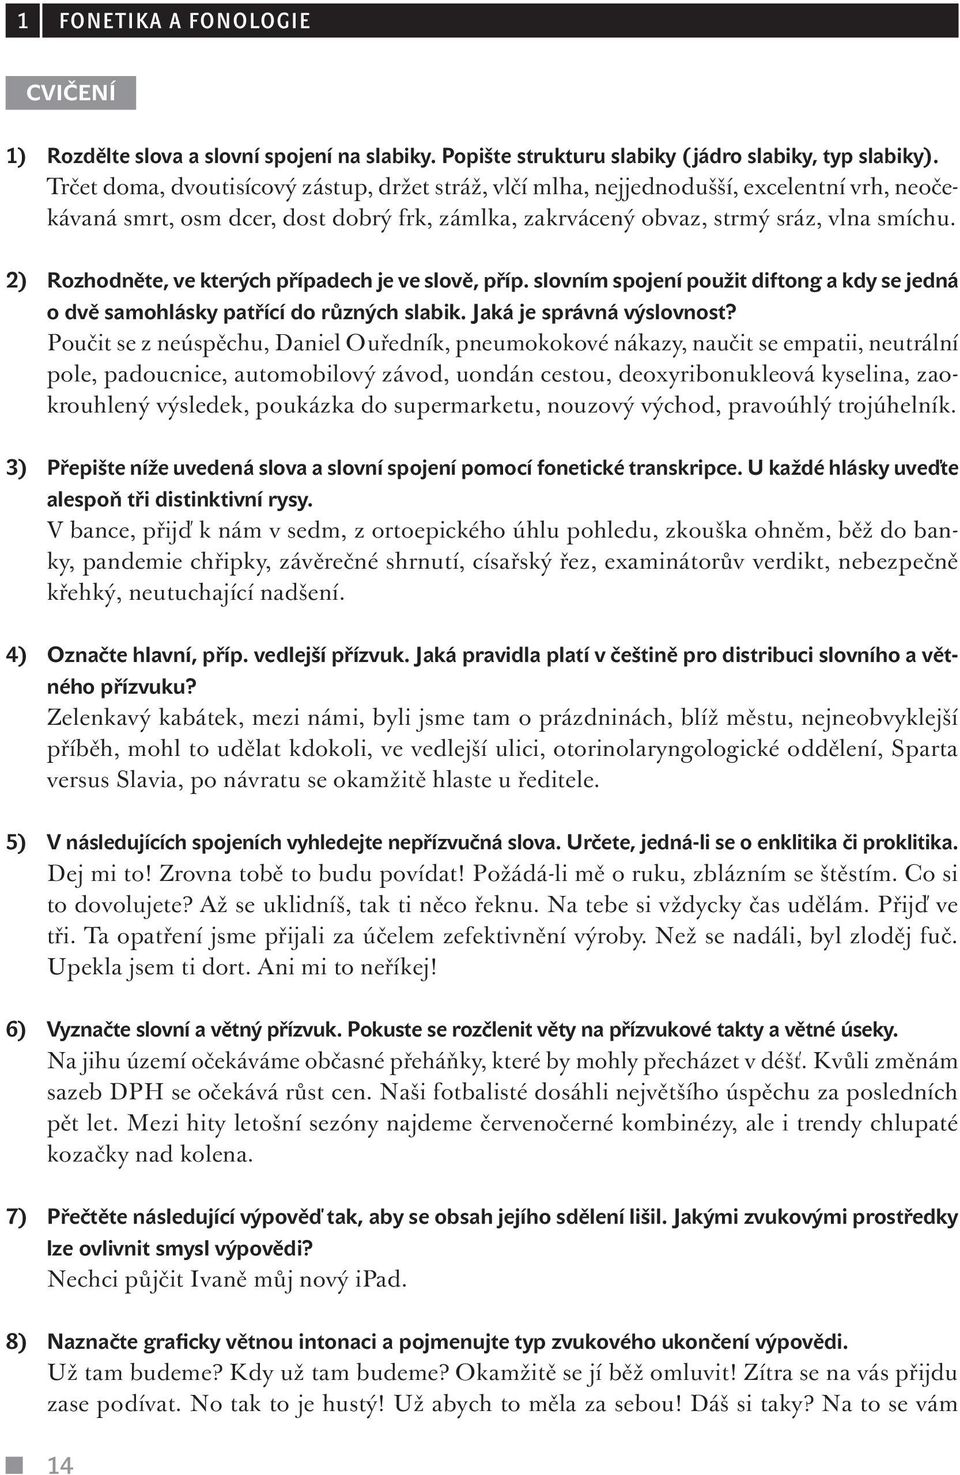 Čeština pro překladatele. Základy teorie, interpretace textů, praktická  cvičení - PDF Free Download